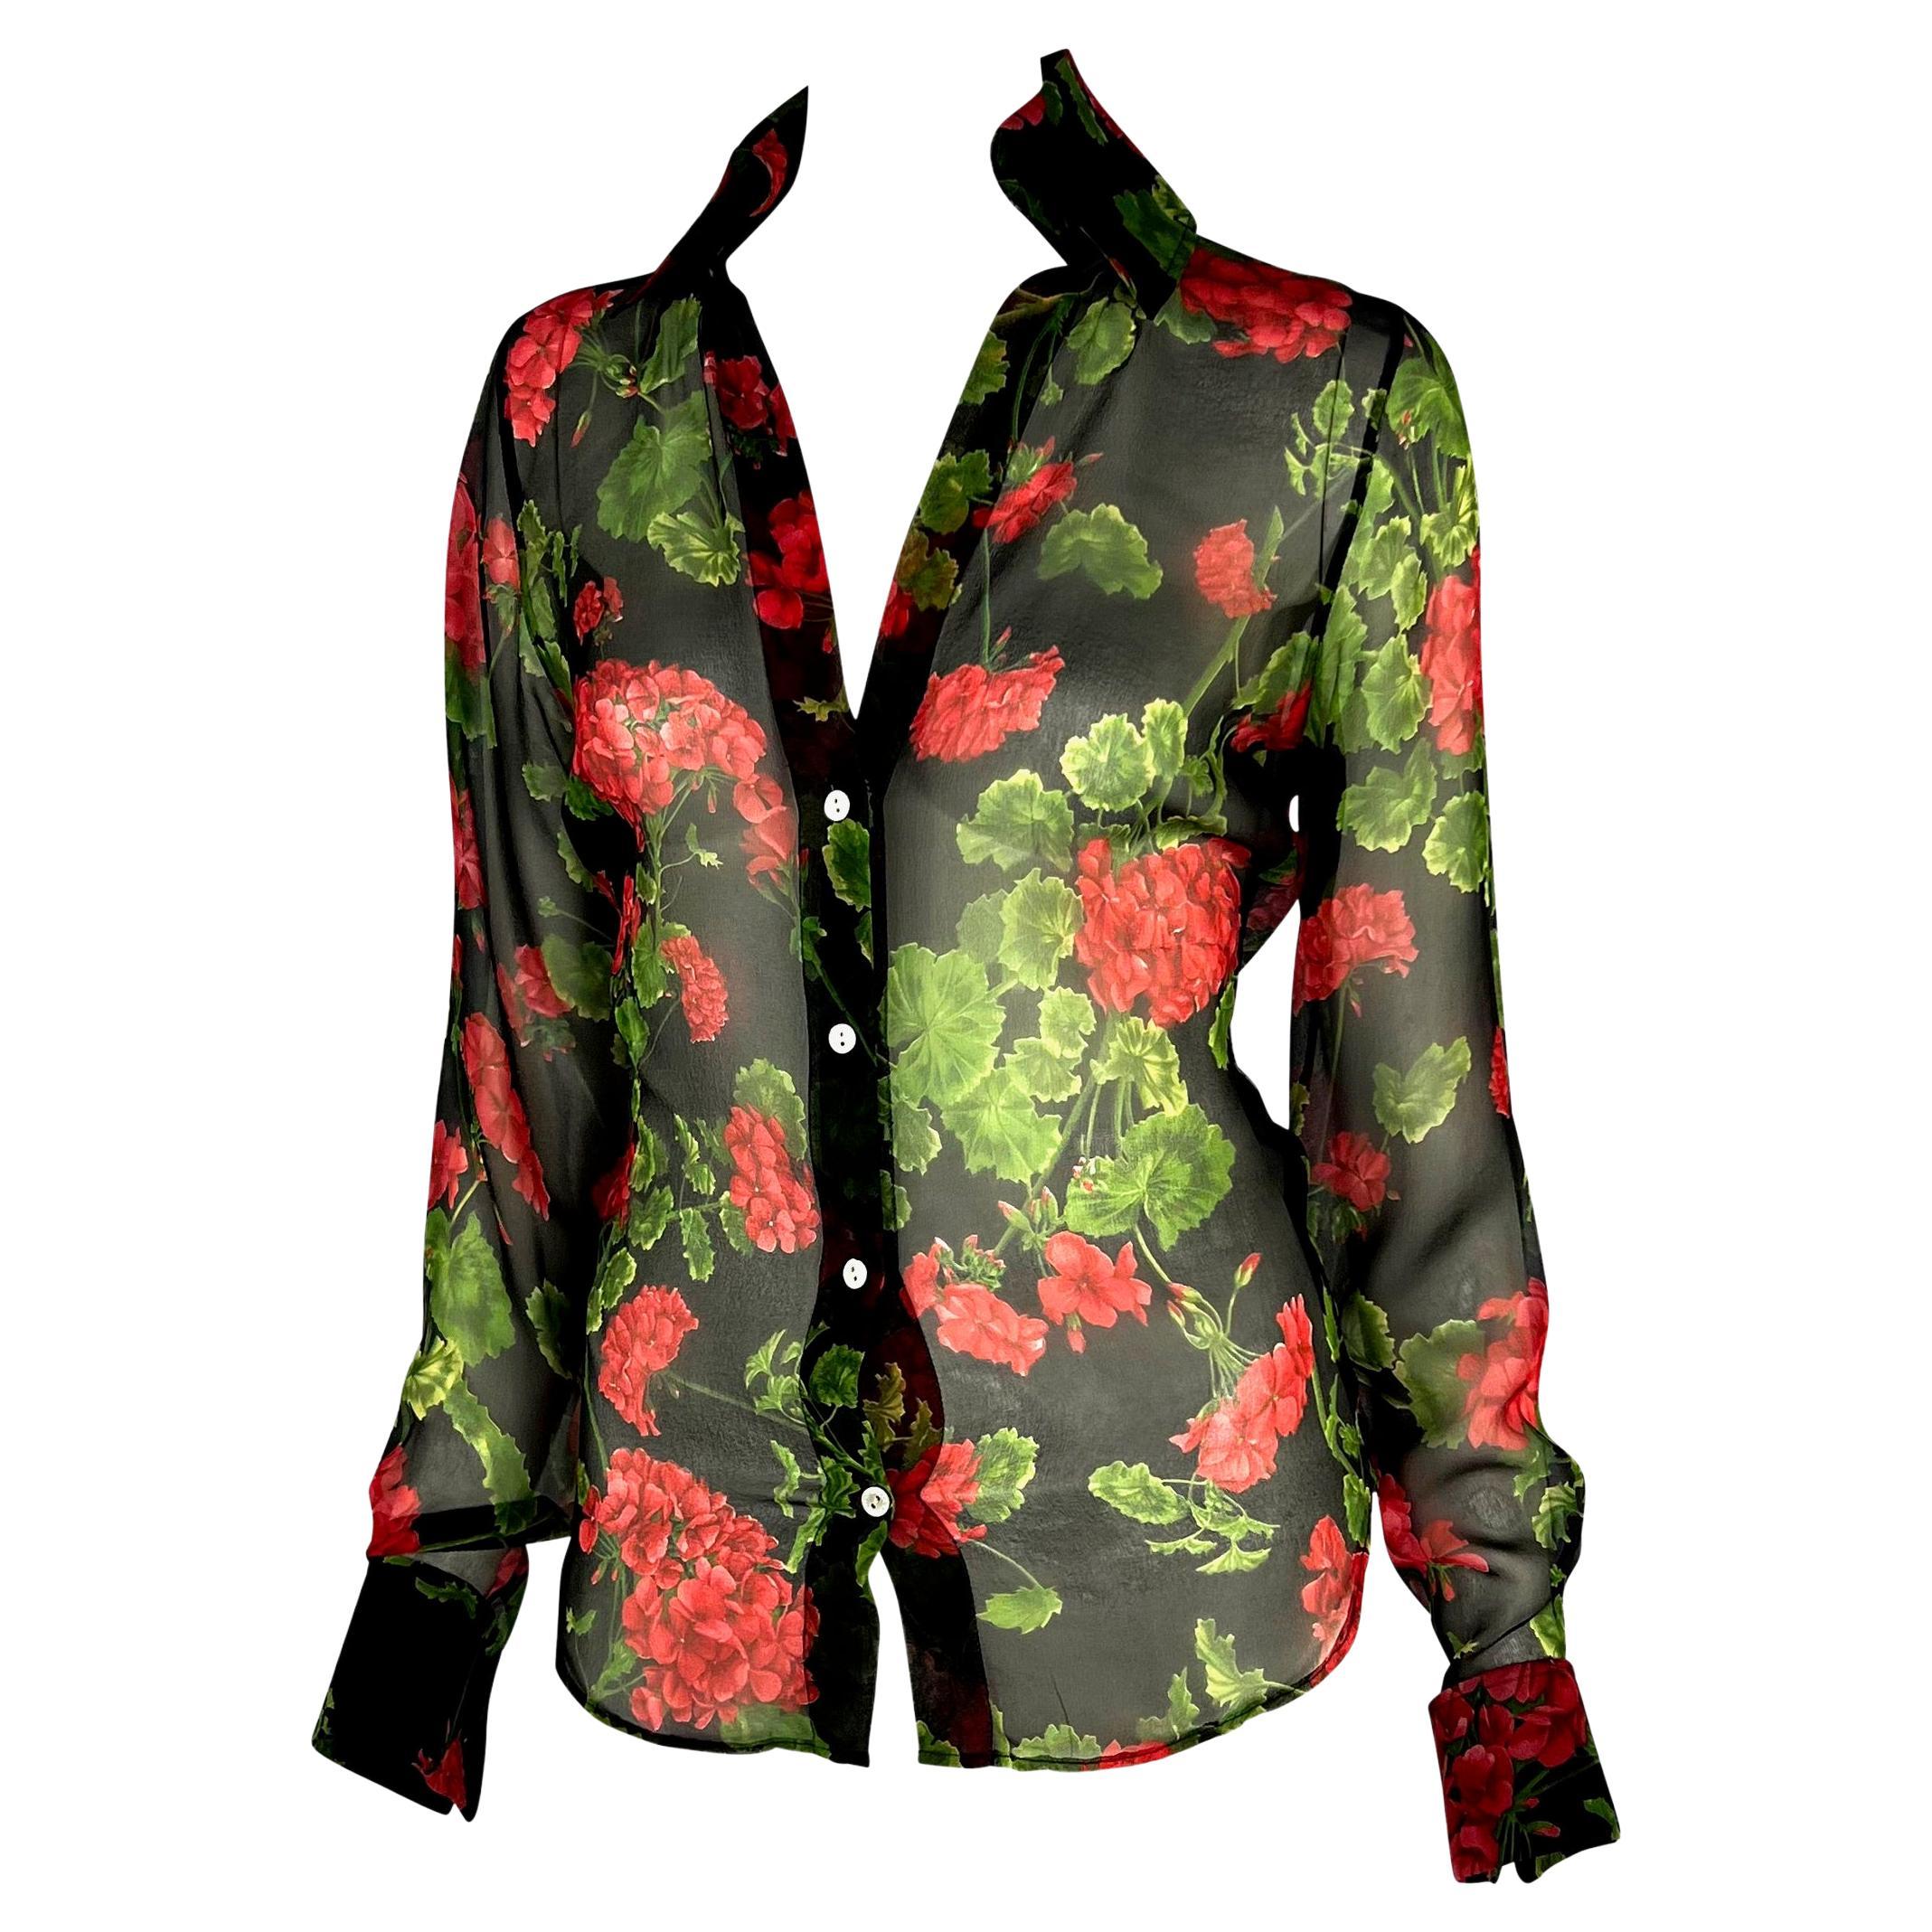 Présentation d'une chemise boutonnée Dolce and Gabbana à fleurs transparentes. Issue de la collection Printemps/Eté 2000, cette chemise semi-transparente est recouverte d'hortensias rouges sur fond noir. Le haut a un décolleté plongeant et ne se